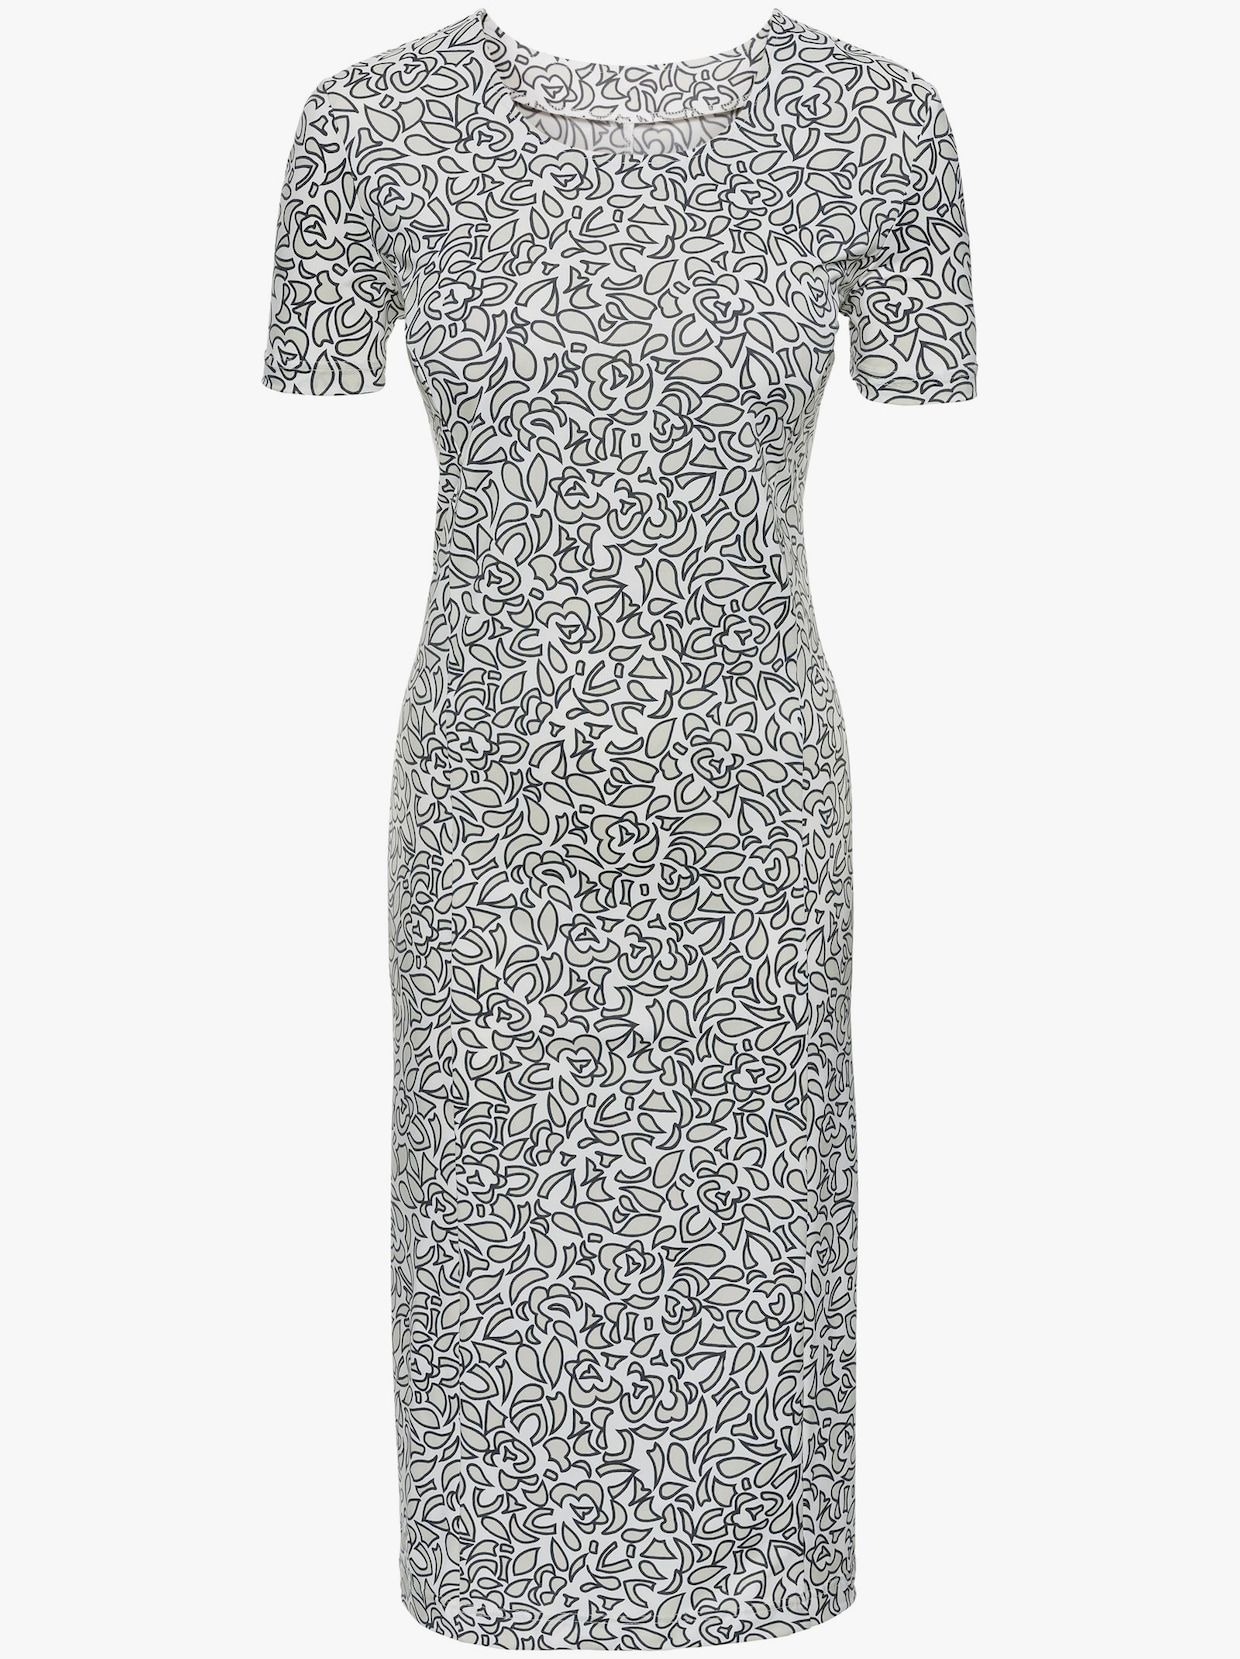 Klänning med tryck - grå+vit, tryckt